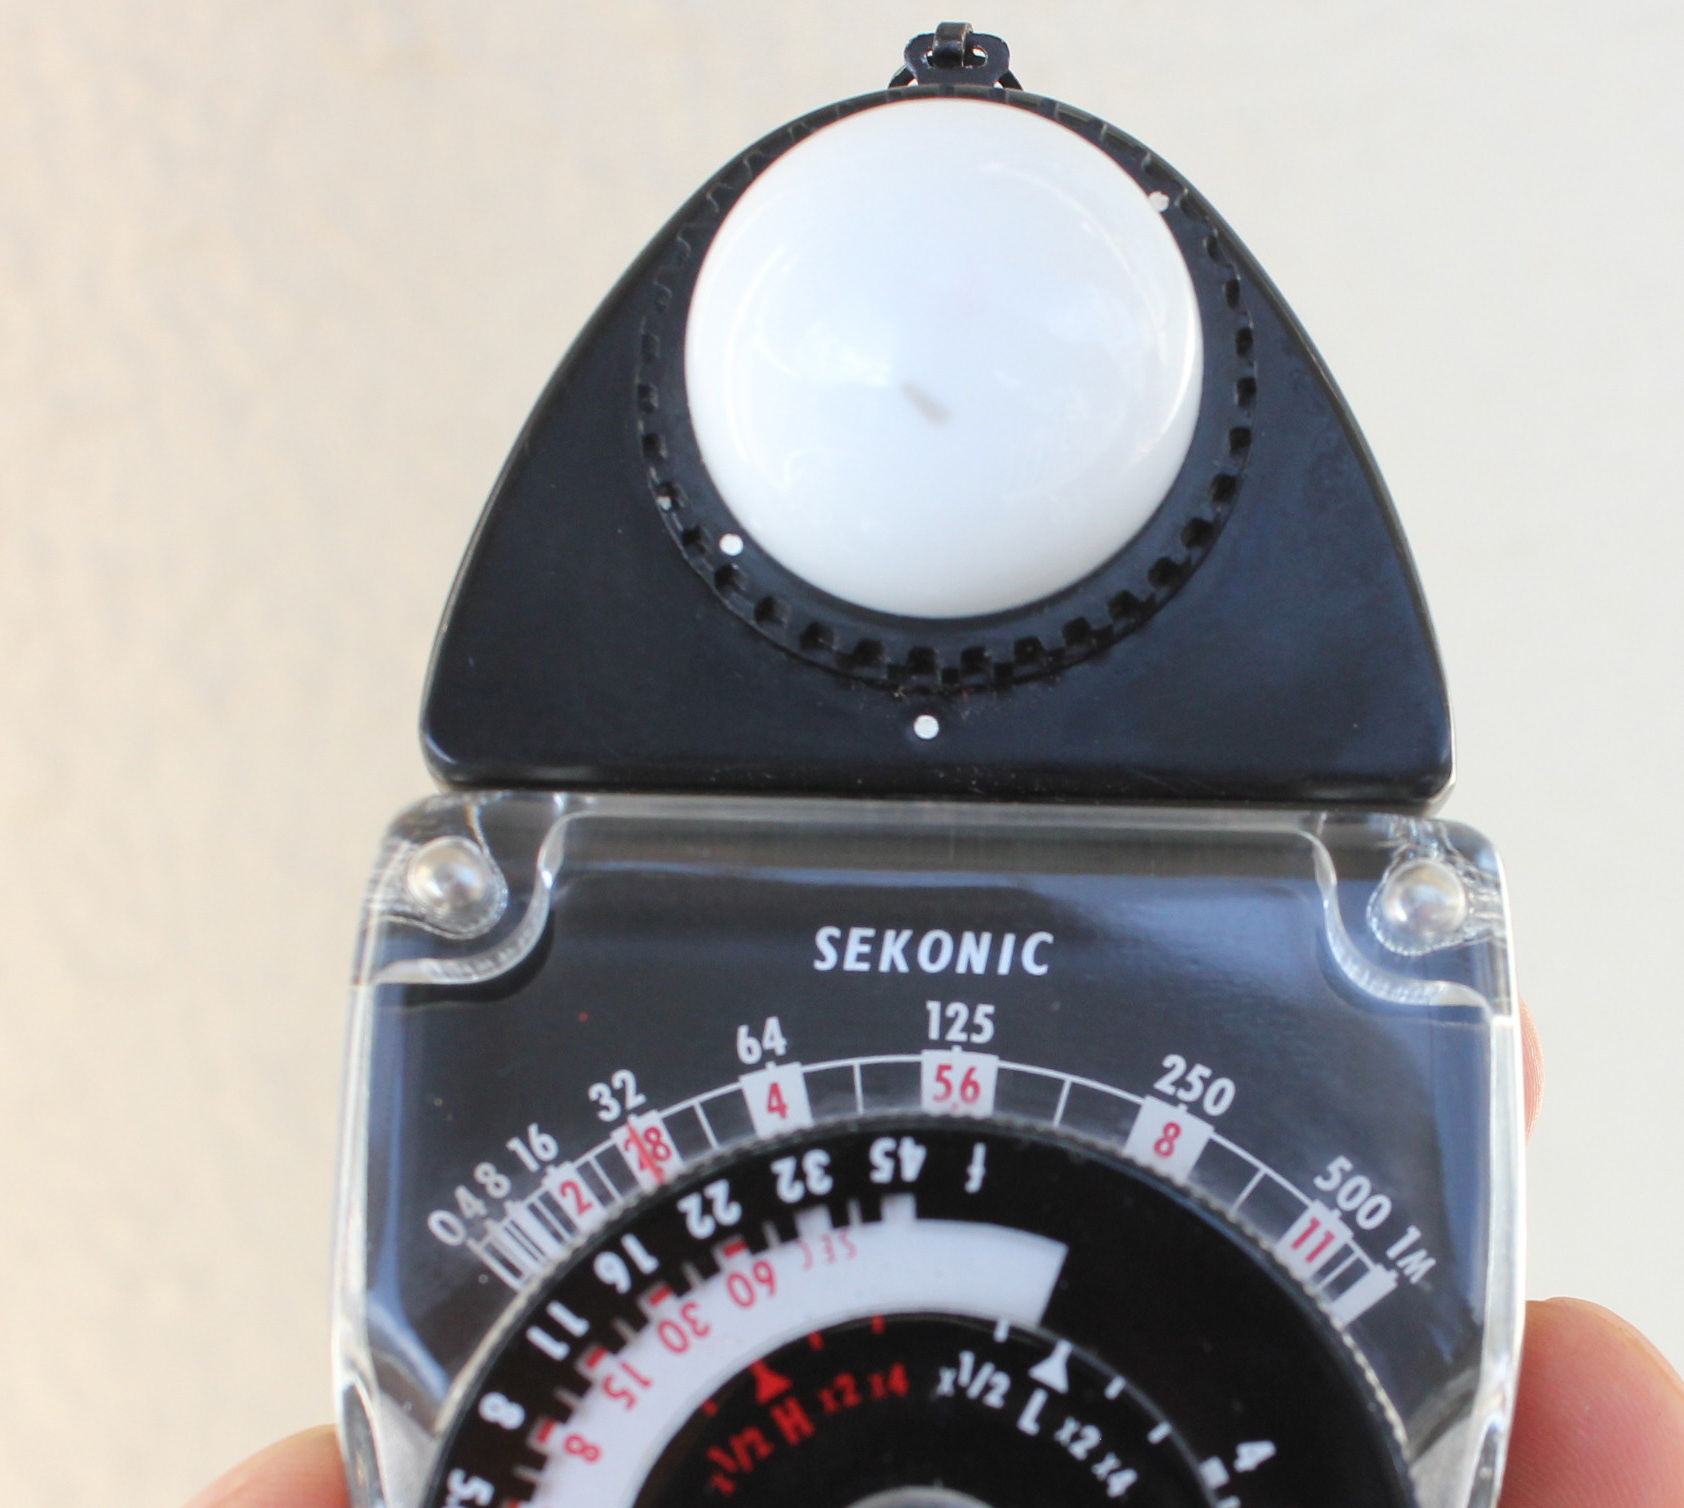  Sekonic Studio Deluxe L-28c Light Exposure Meter from Japan Photo 6